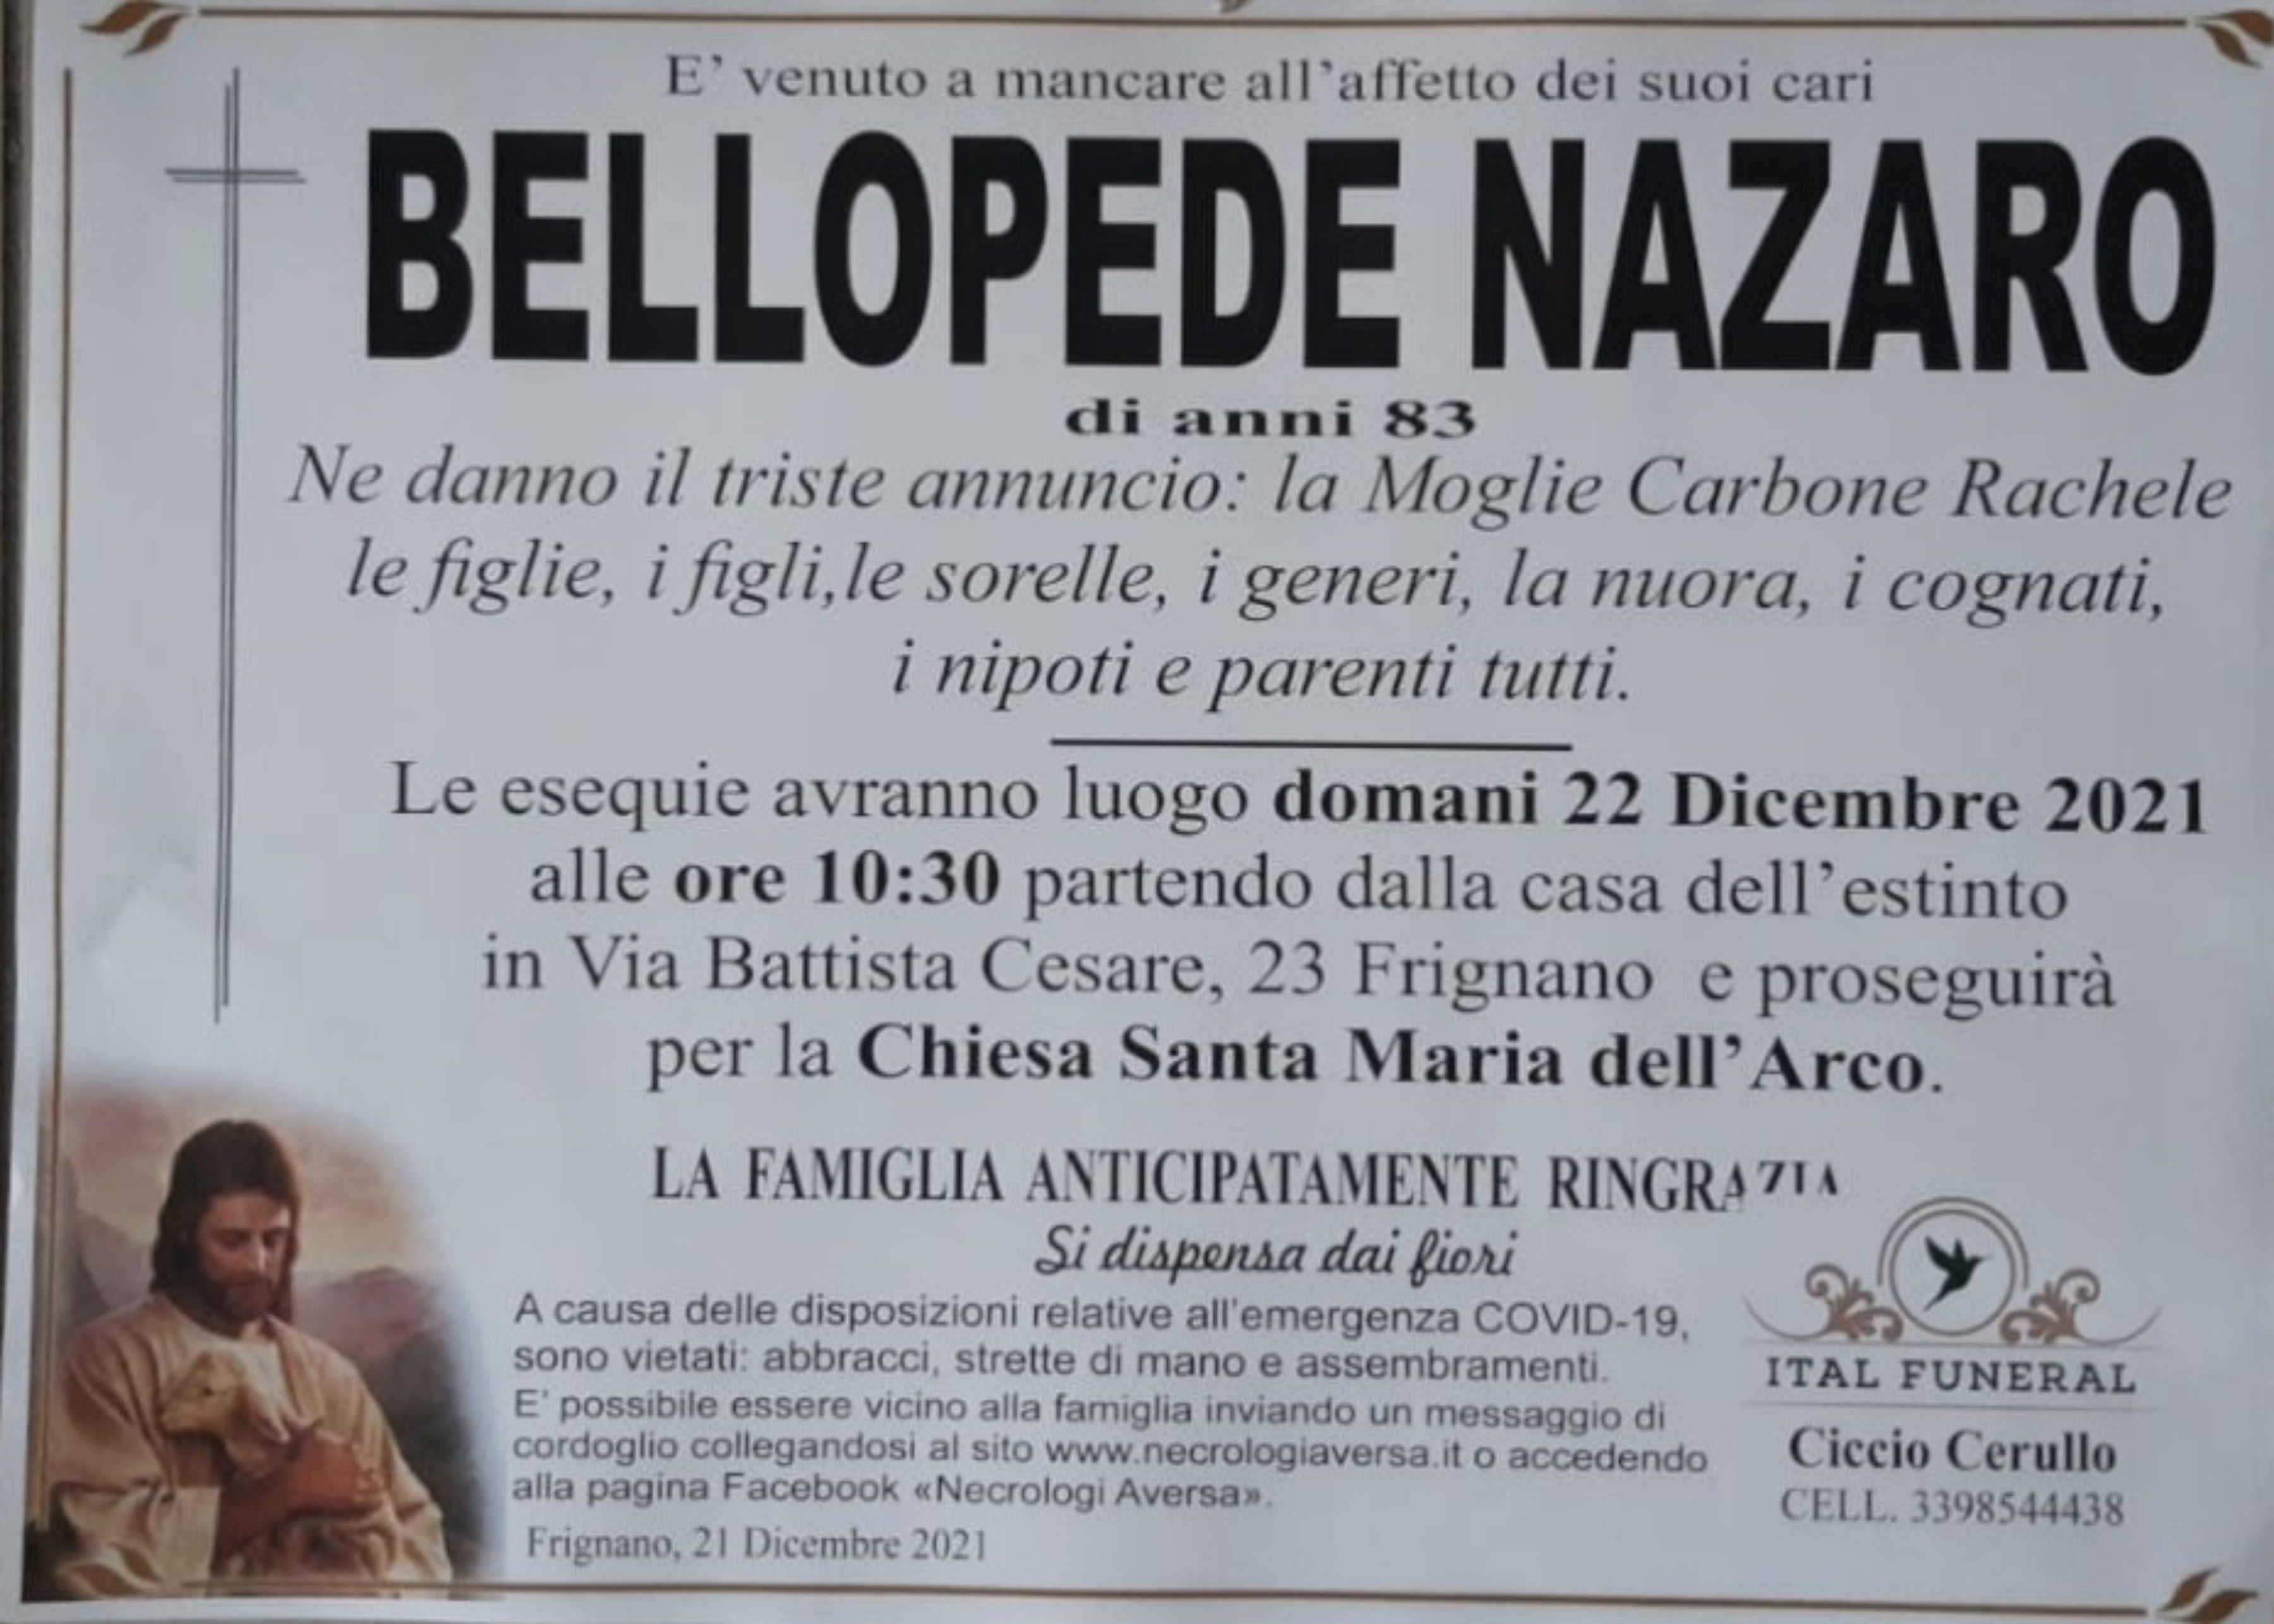 Nazaro Bellopede